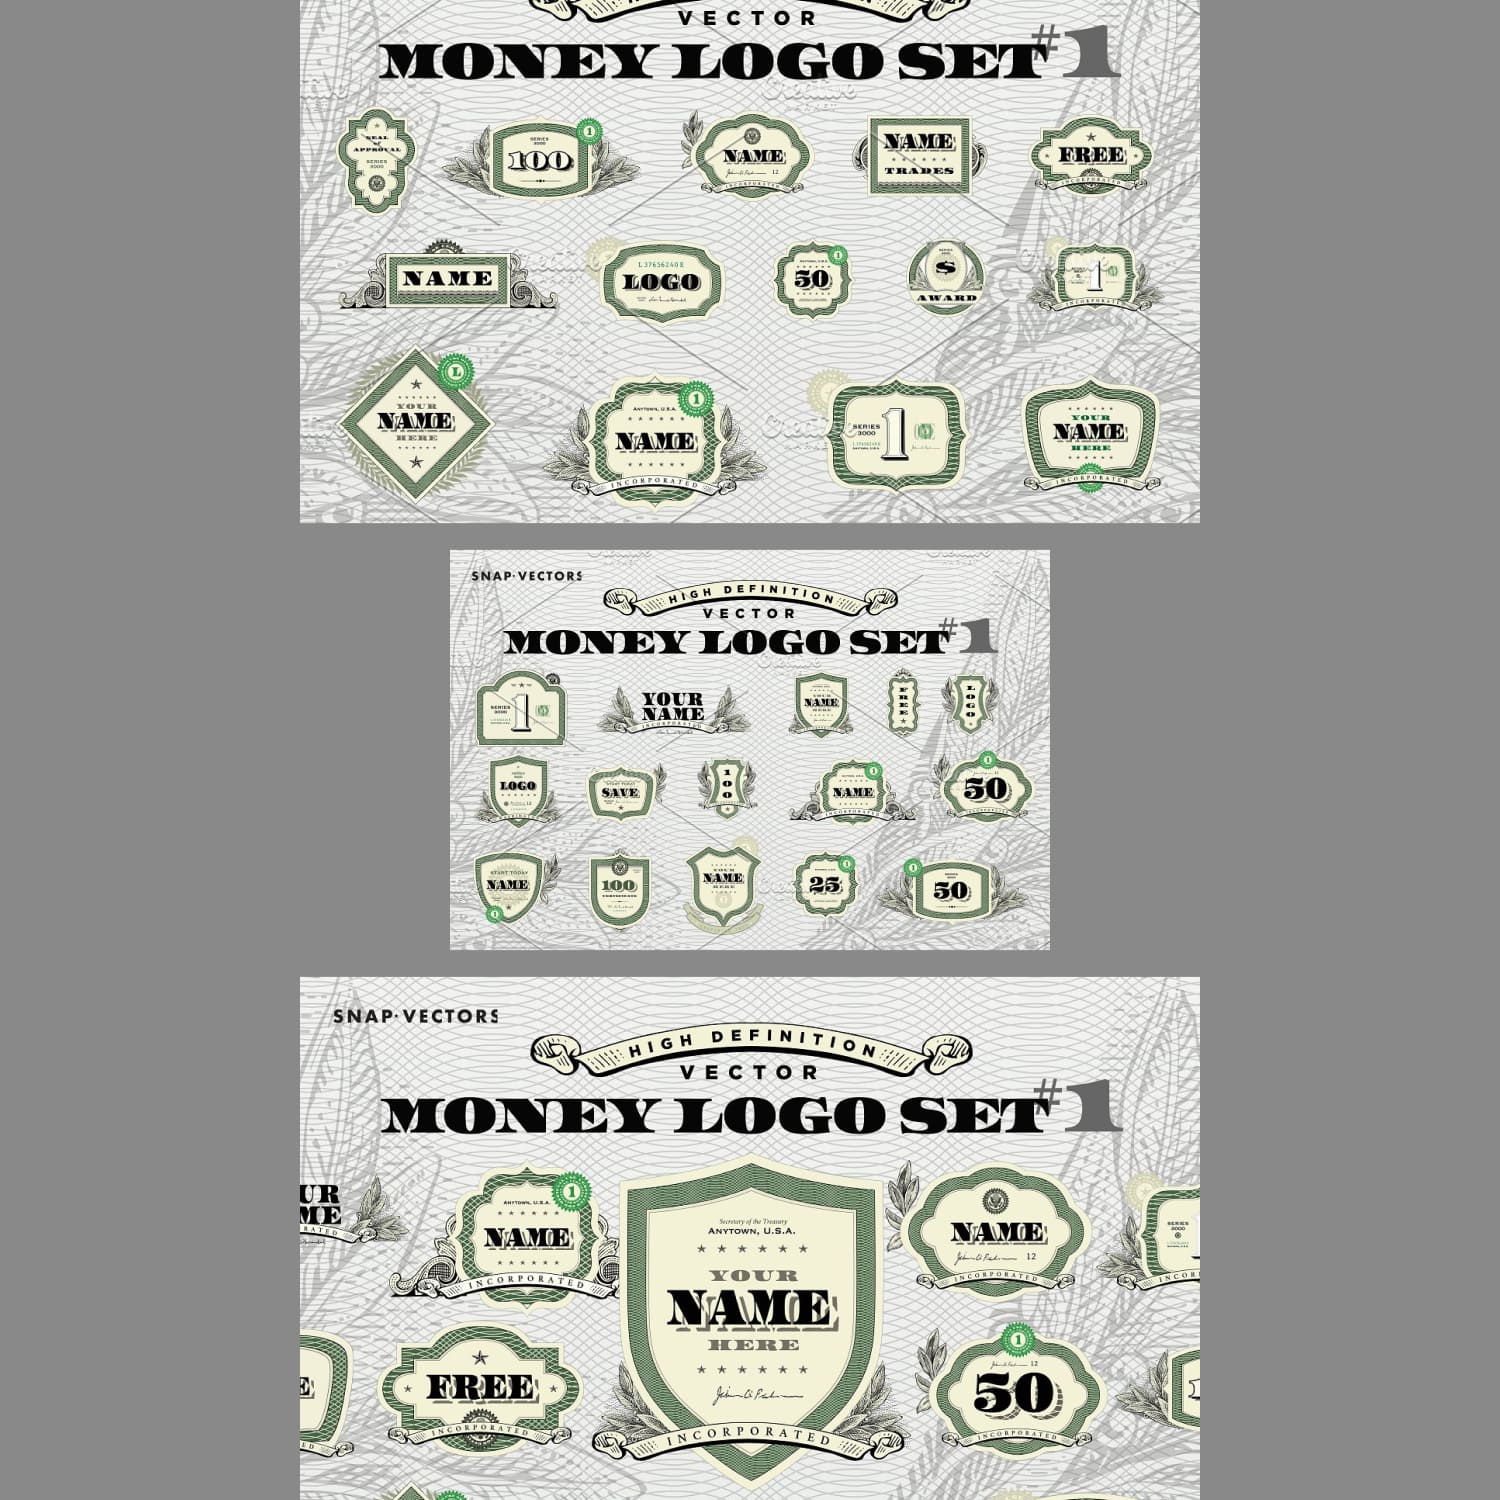 Vector Money Logo Set #1 cover.